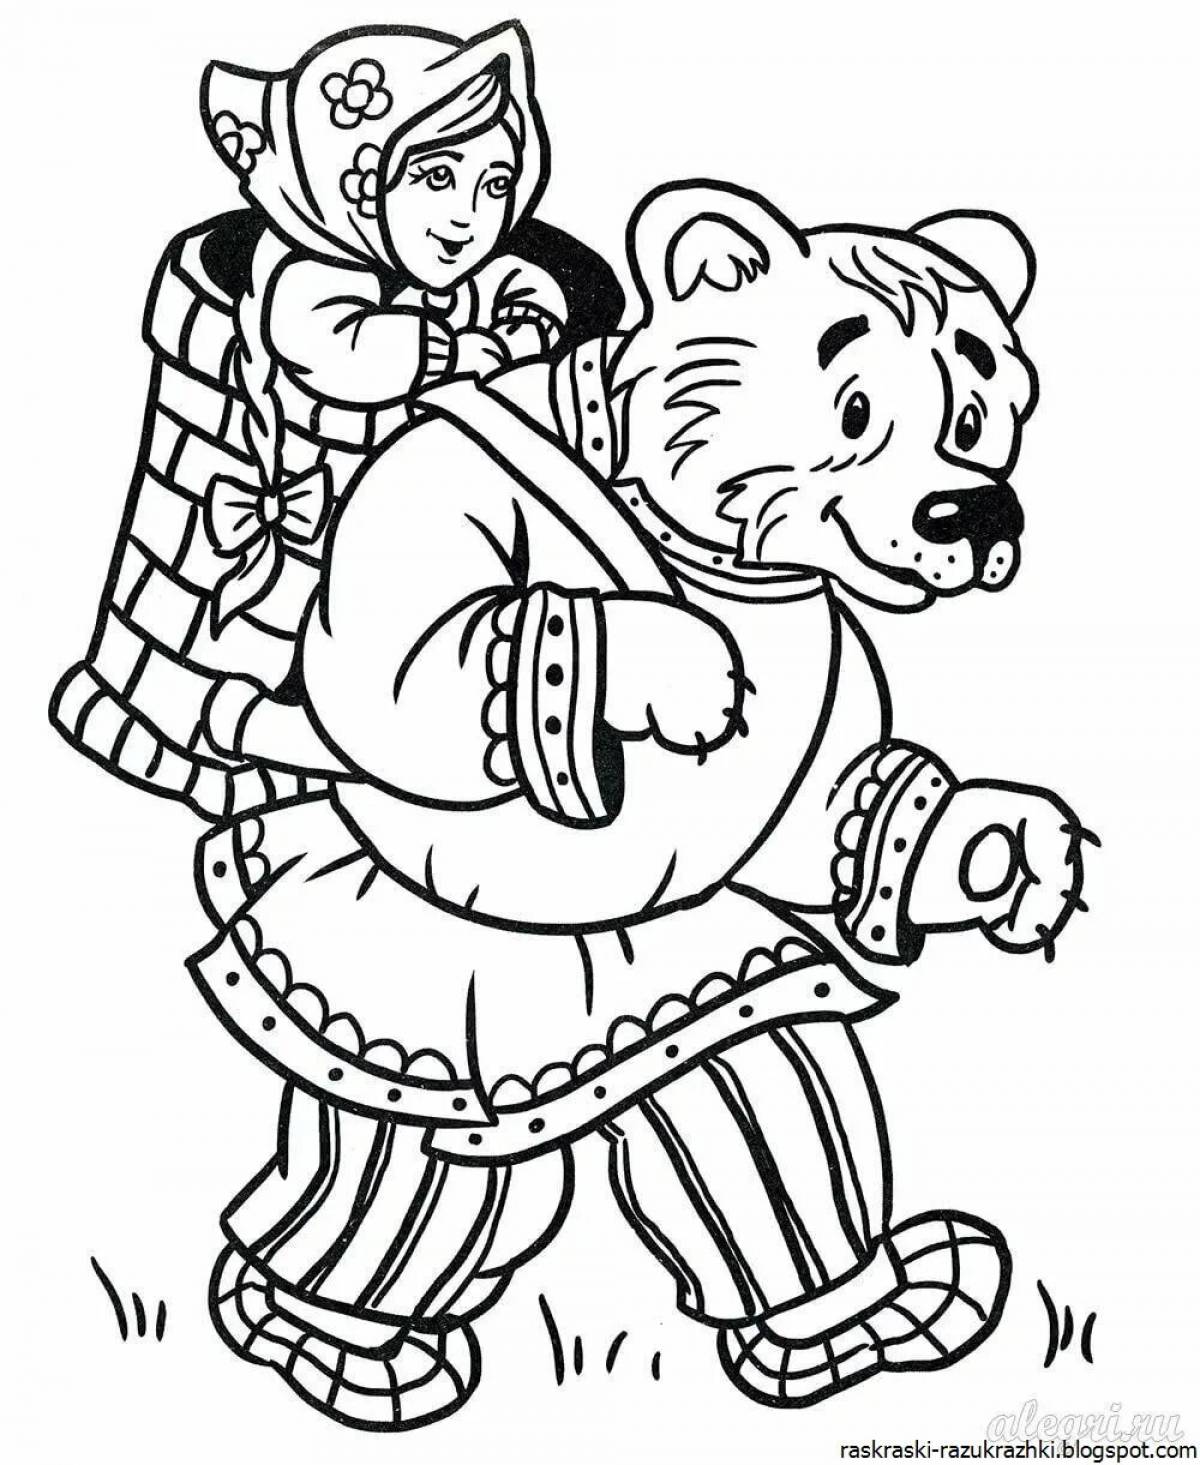 Russian folk tales for preschool children #1